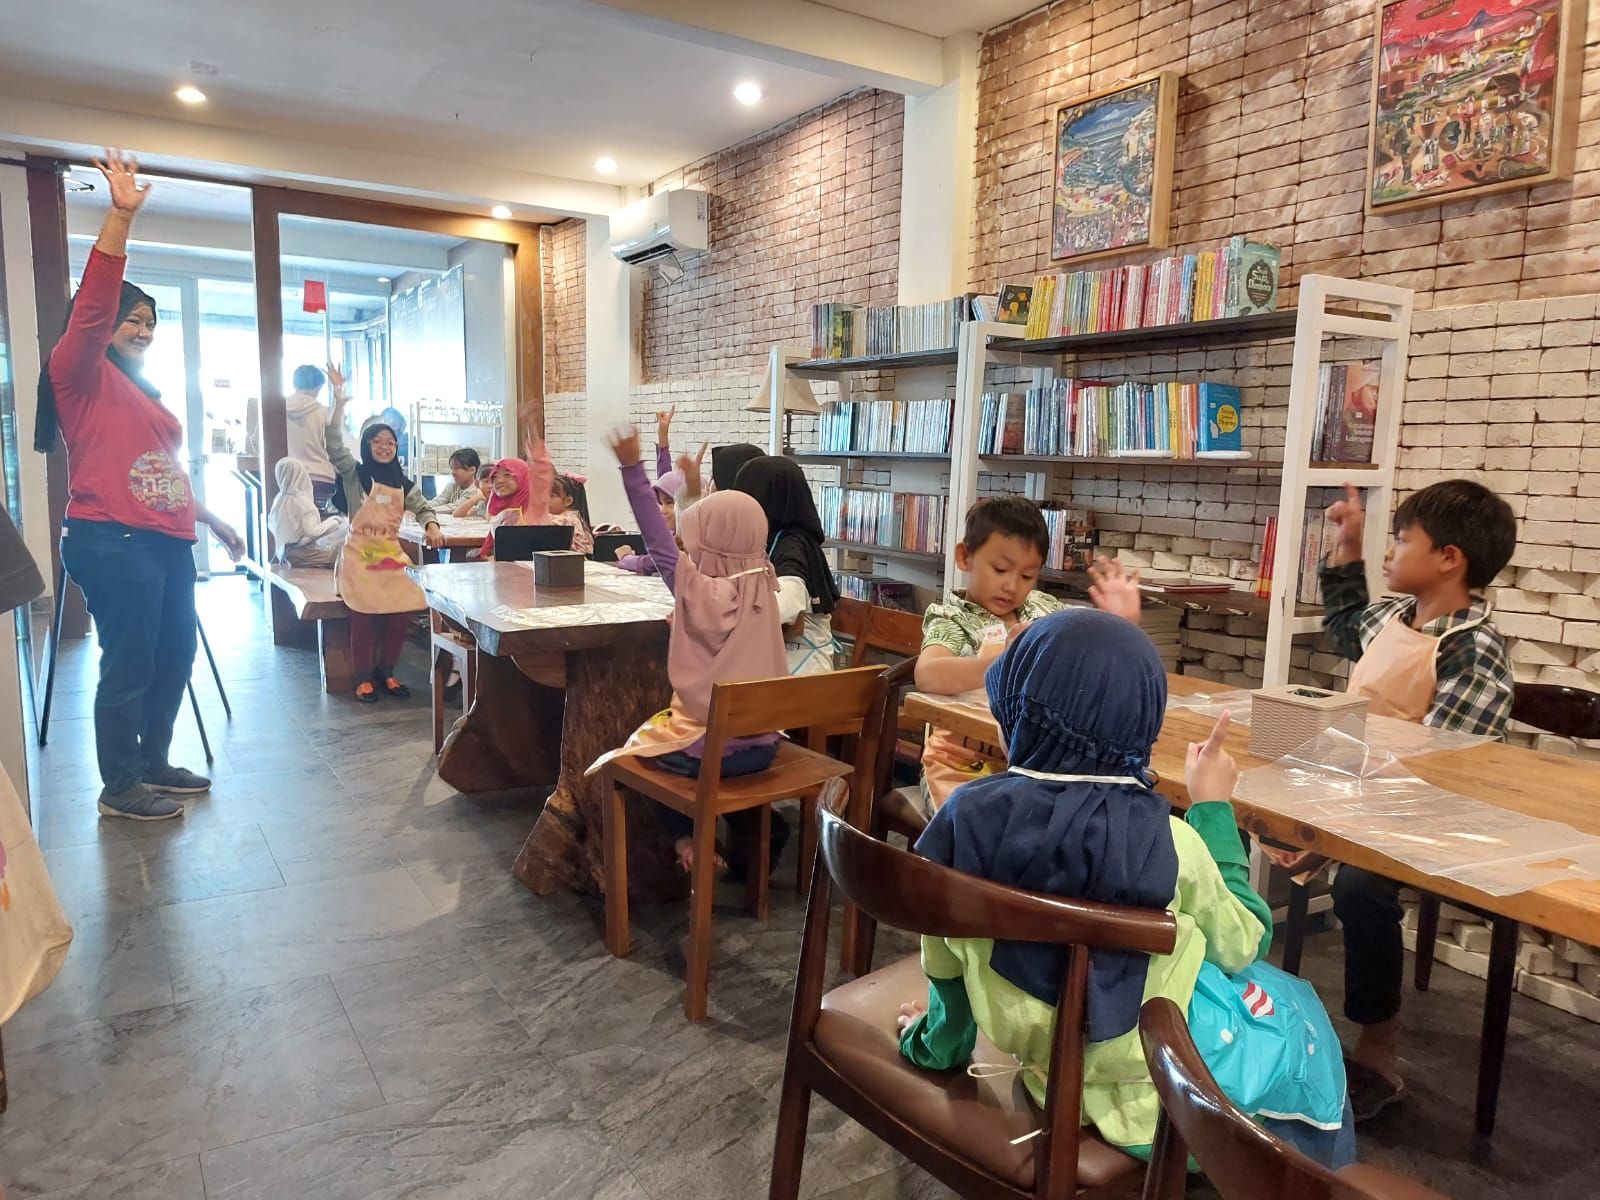 Cek 5 Kafe Perpustakaan di Bandung, Suasana Paling Cozy dan Bikin Betah